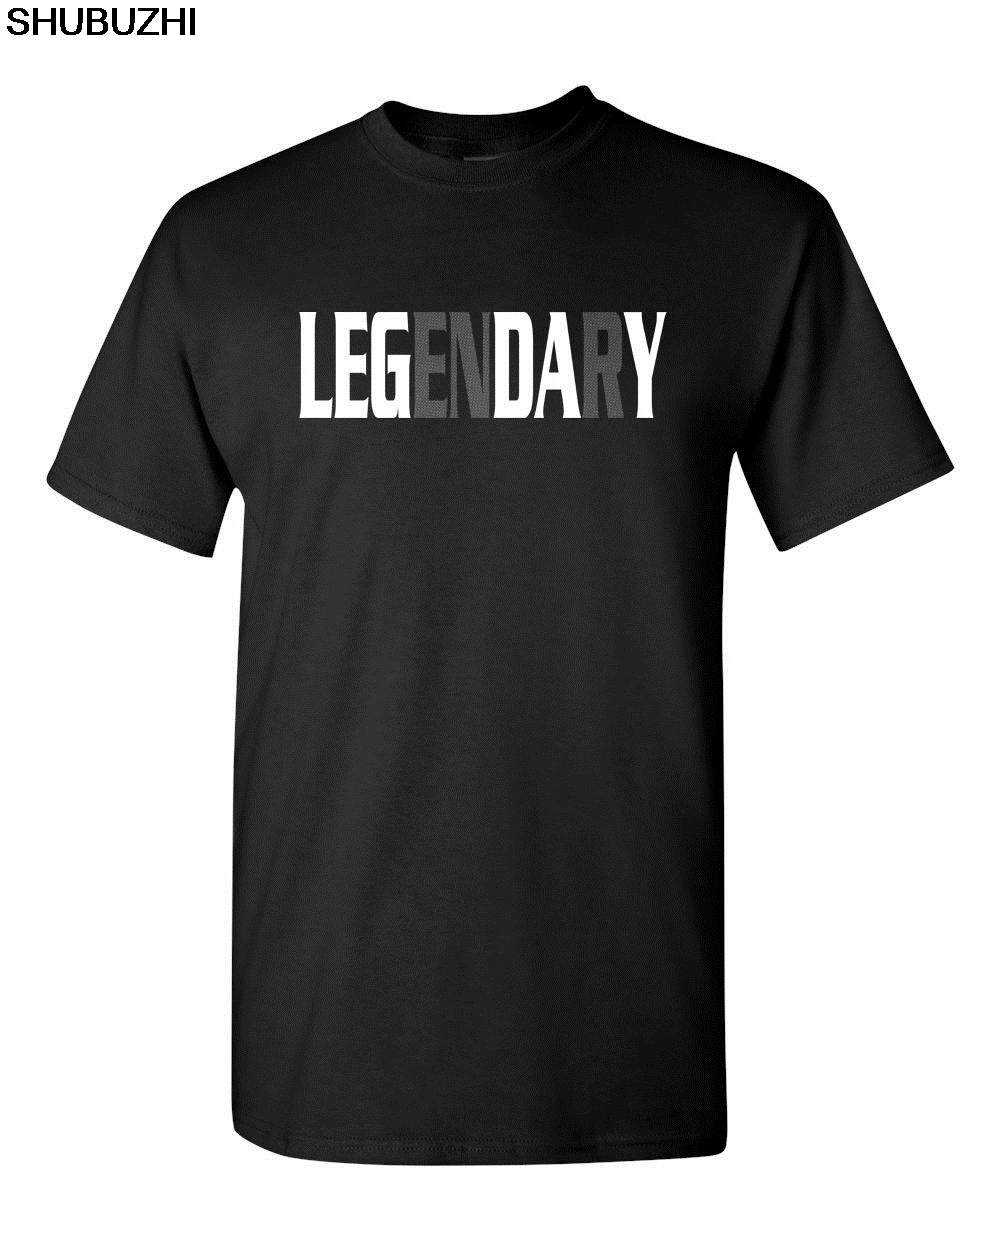 

Legendary Leg Day Funny Workout Weight Lifting Men'S Tee Shirt New Fashion Men Men Hip Hop 3D Print Novelty T Shirts